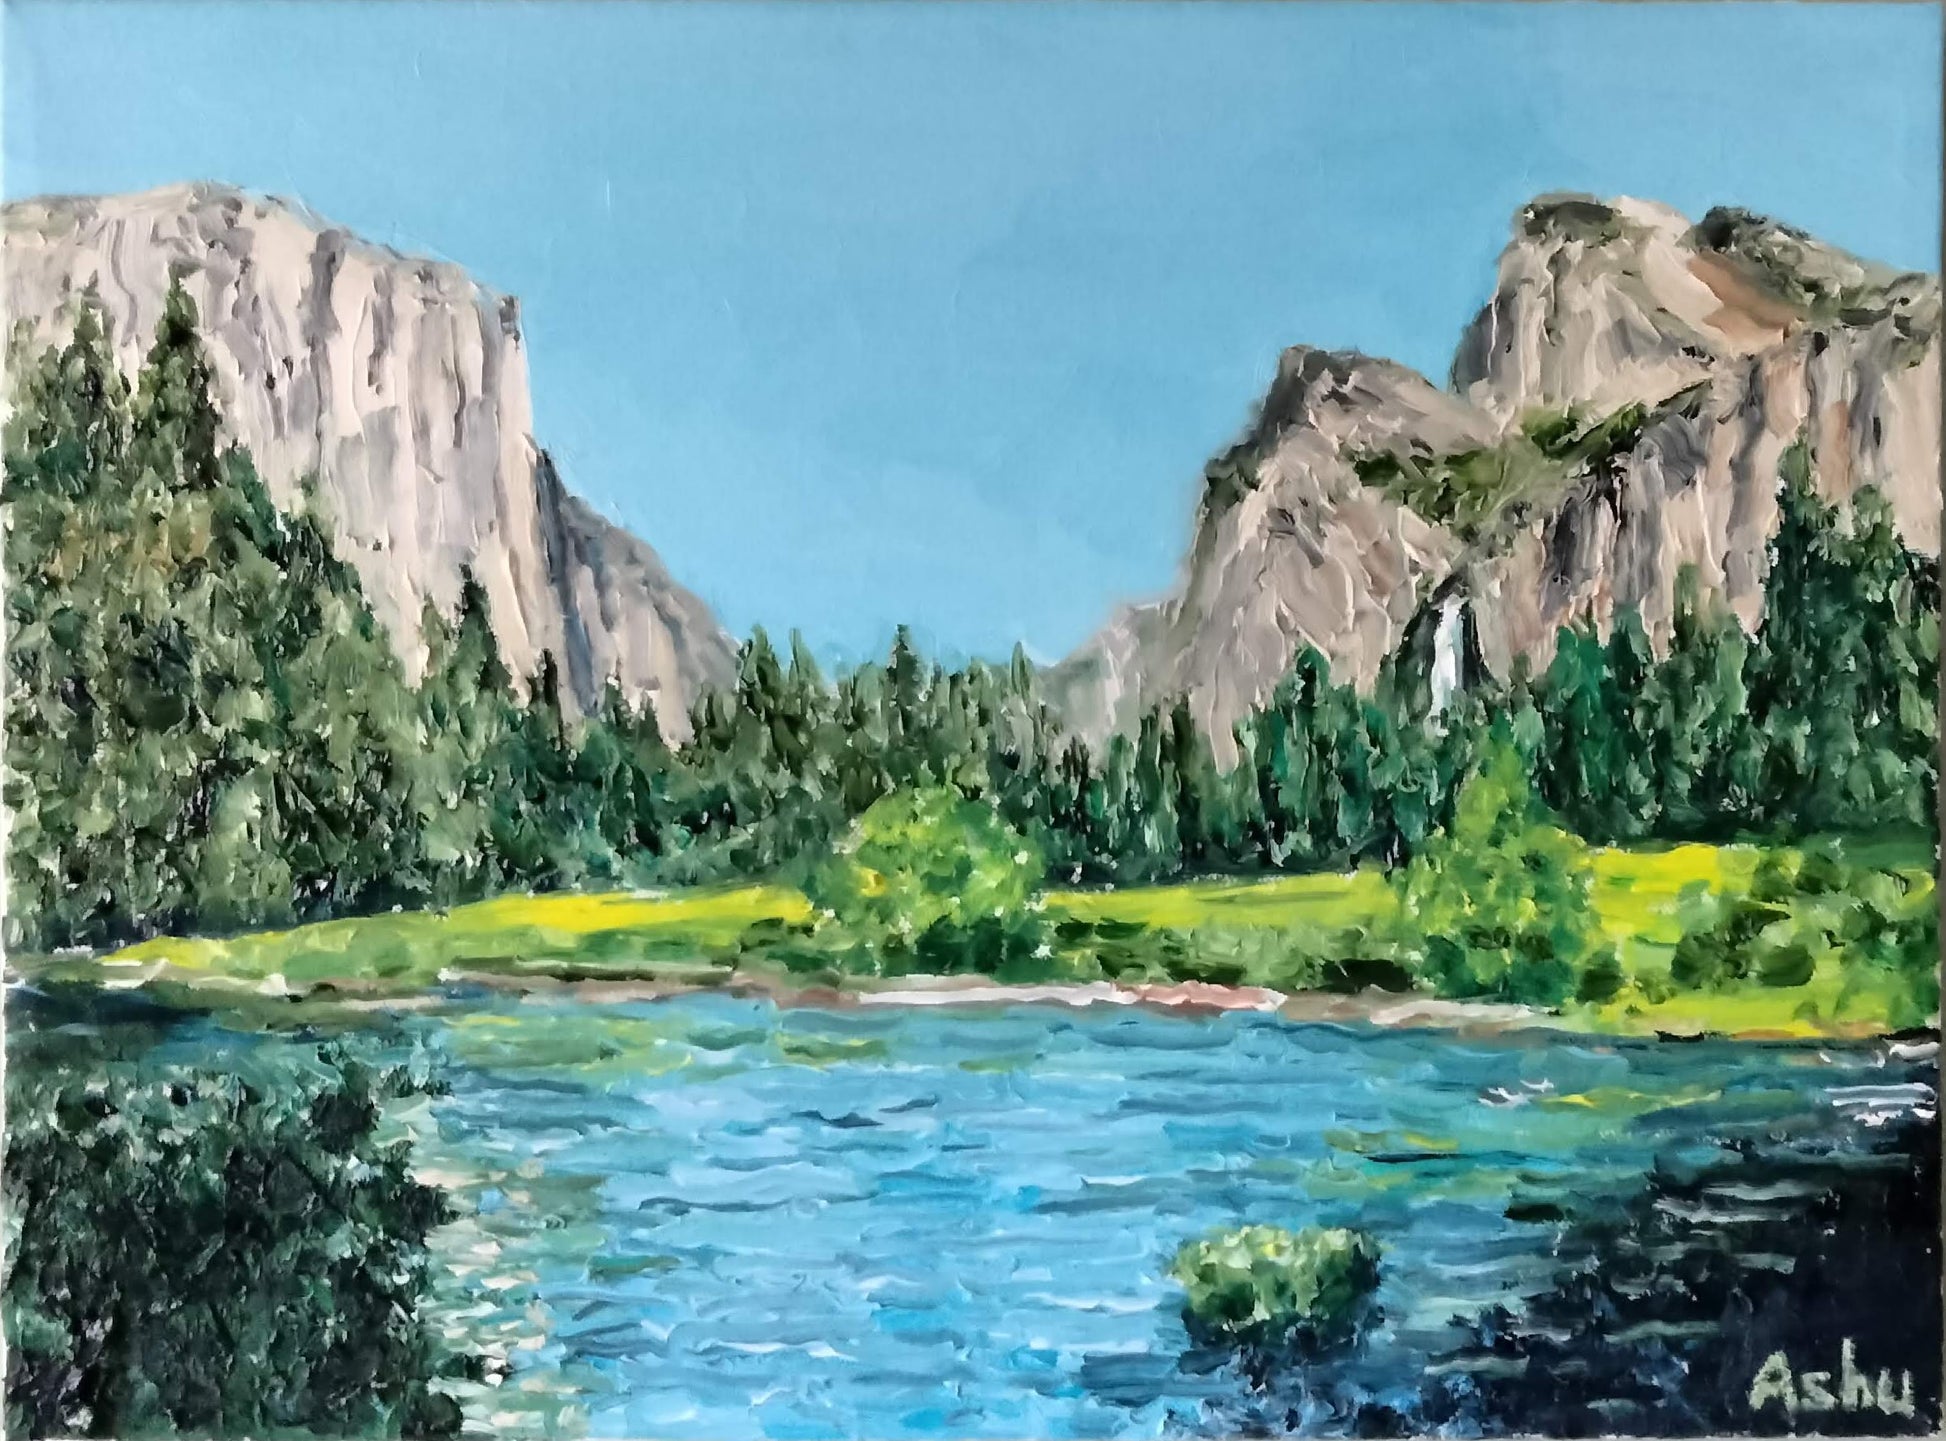 Yosemite Valley - Ashu's Art